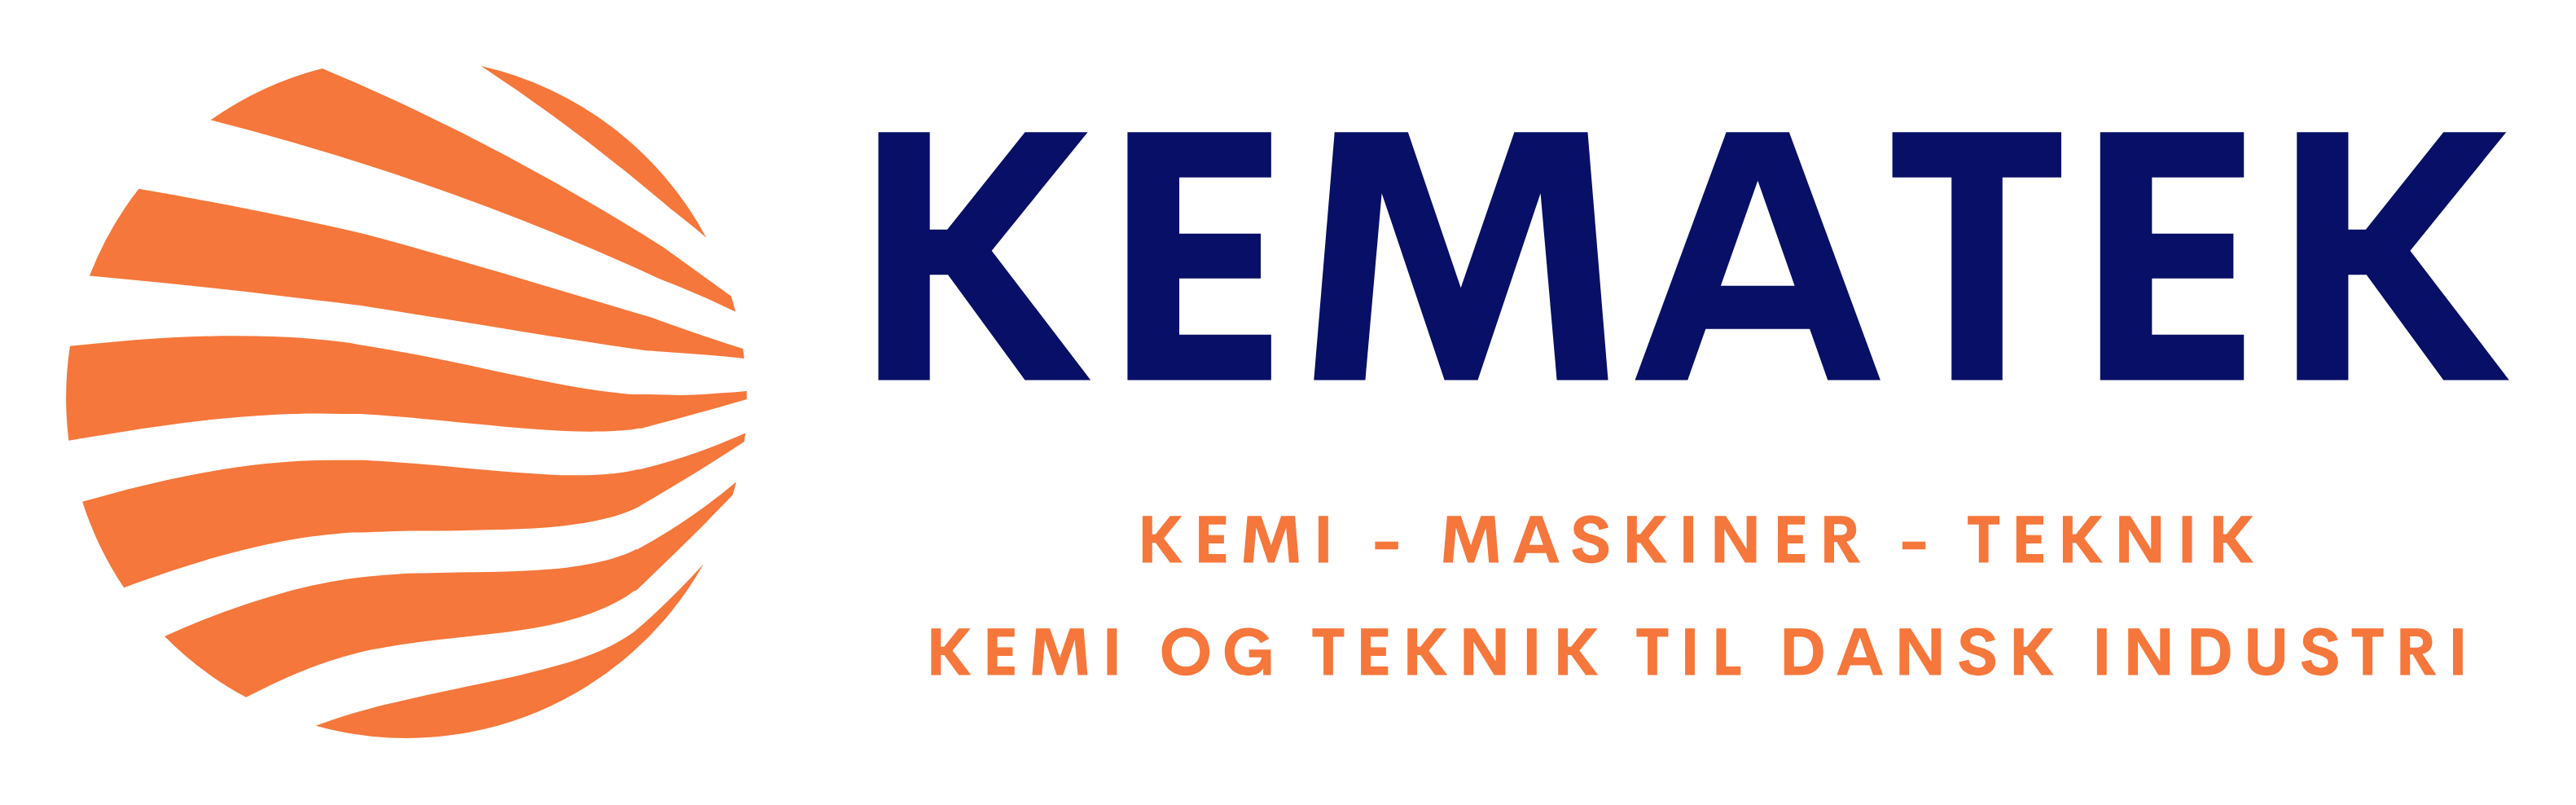 Logo Kematek